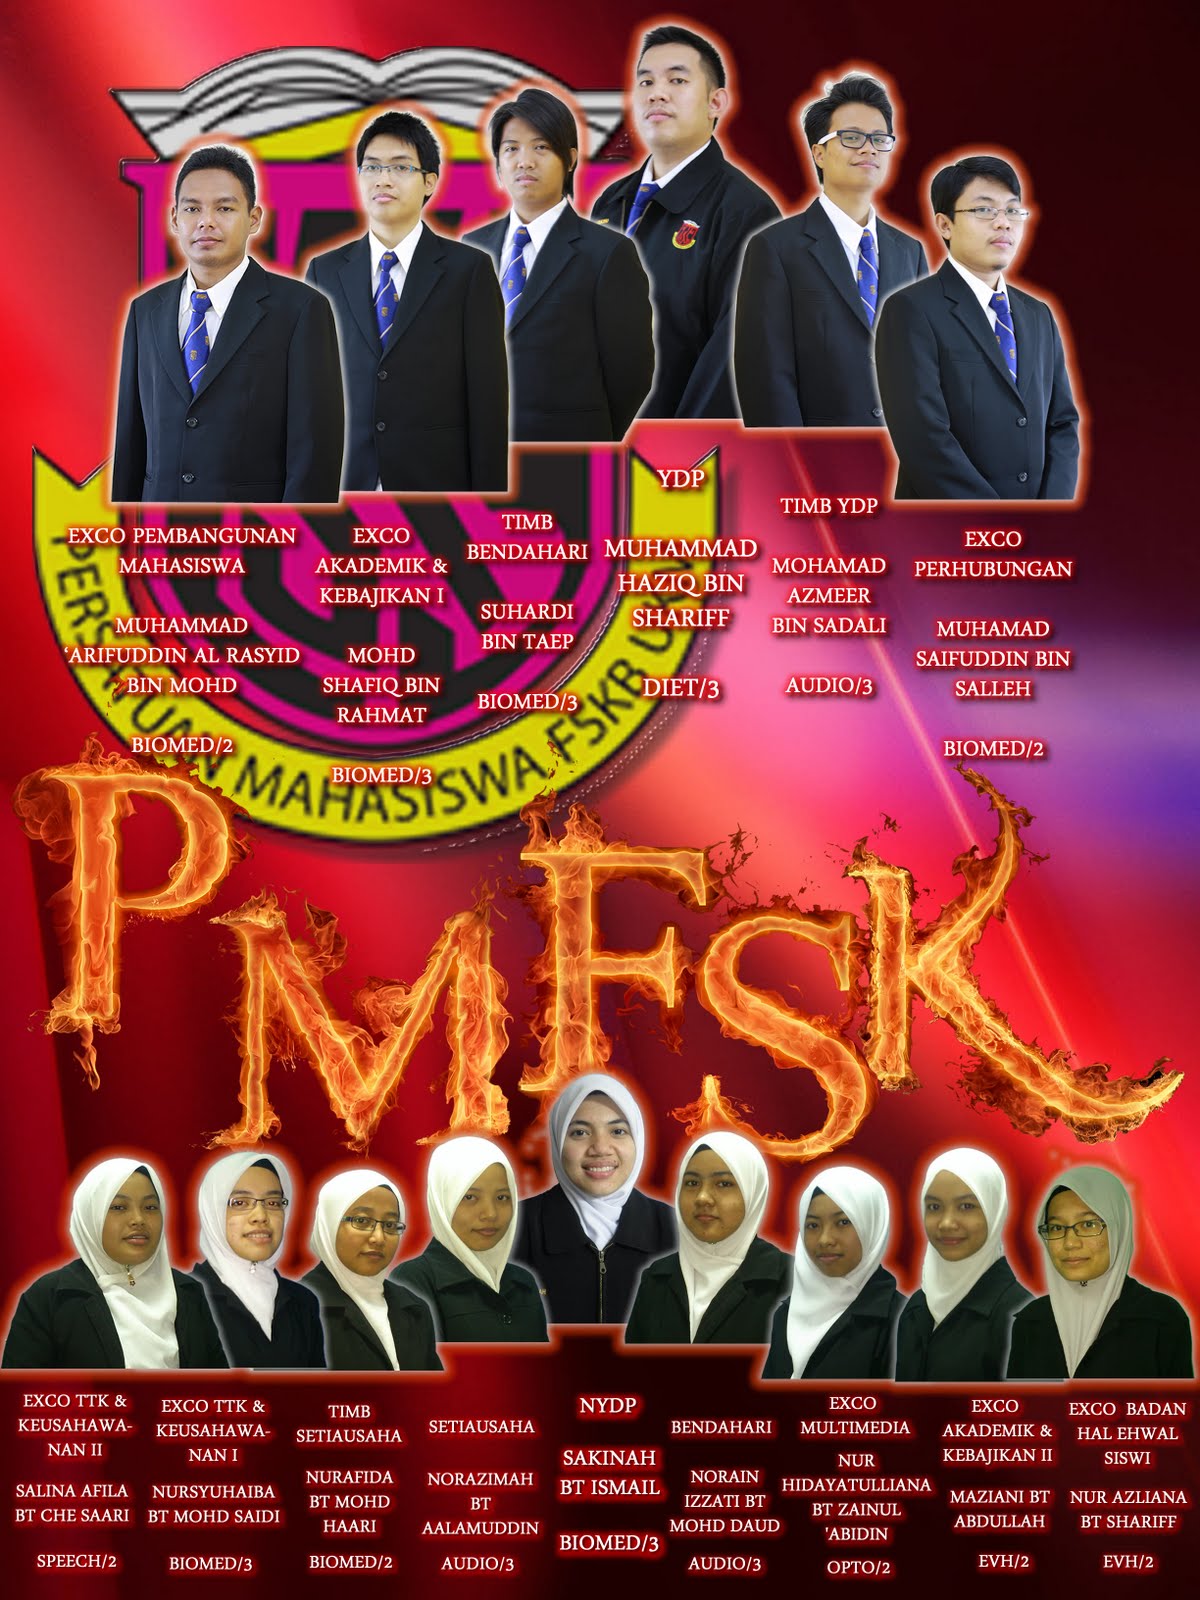 P.M.F.S.K: 2012